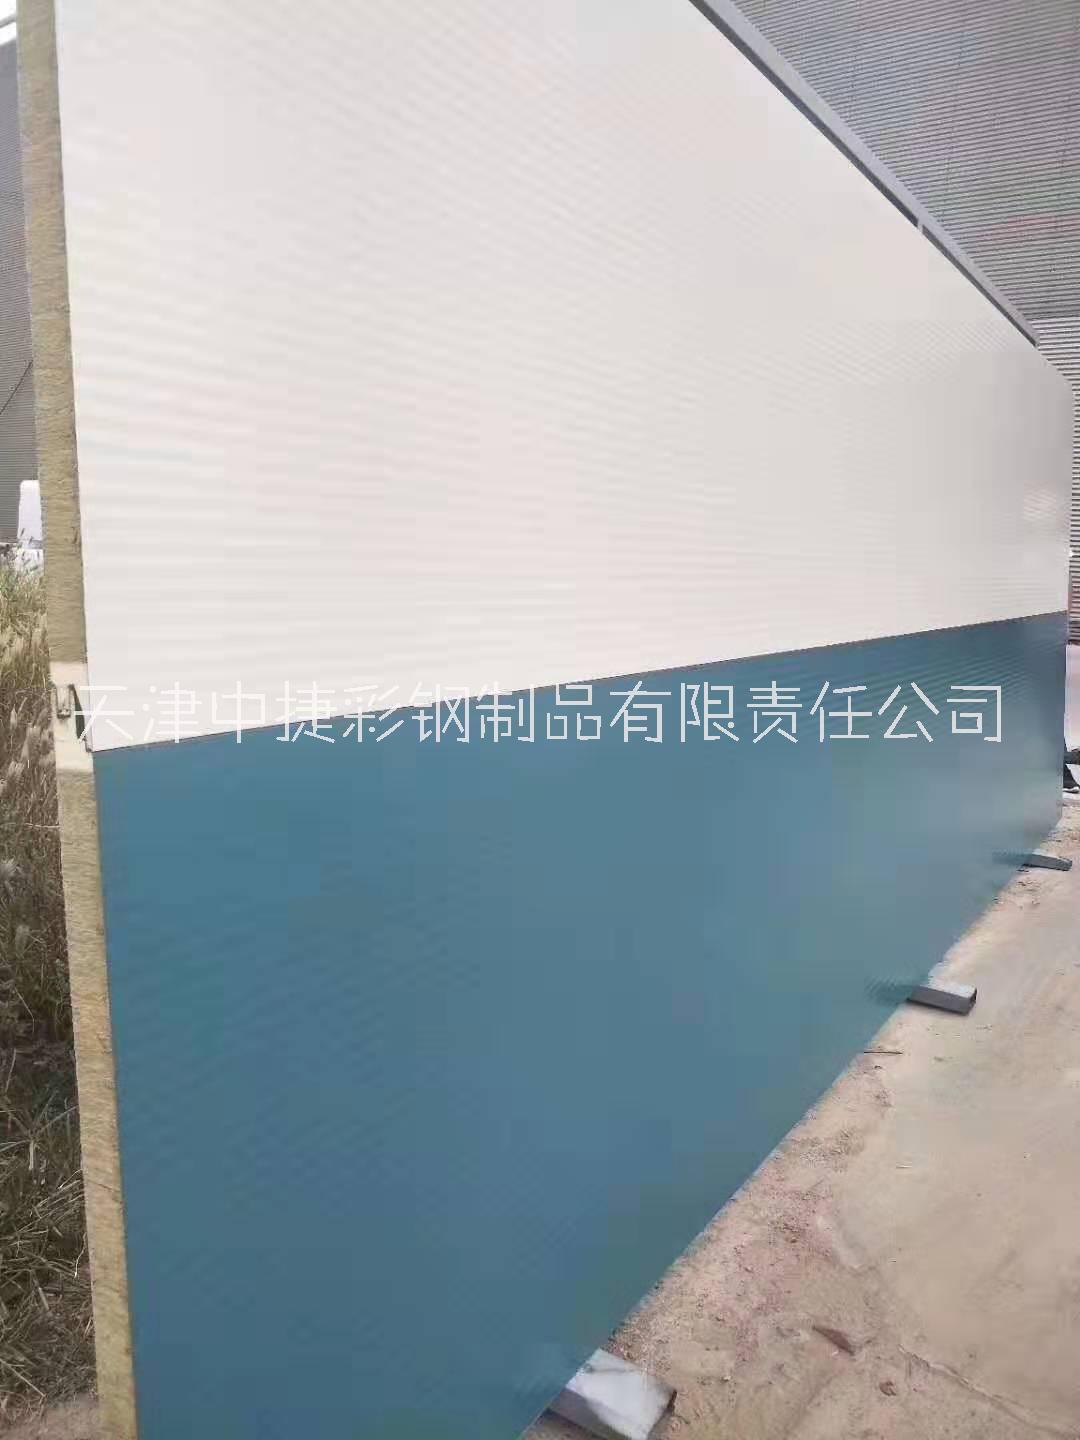 天津供应有效宽度V1000型聚氨酯发泡墙面板 三角筋无拉缝型聚氨酯夹芯保温板 聚氨酯保温彩钢板